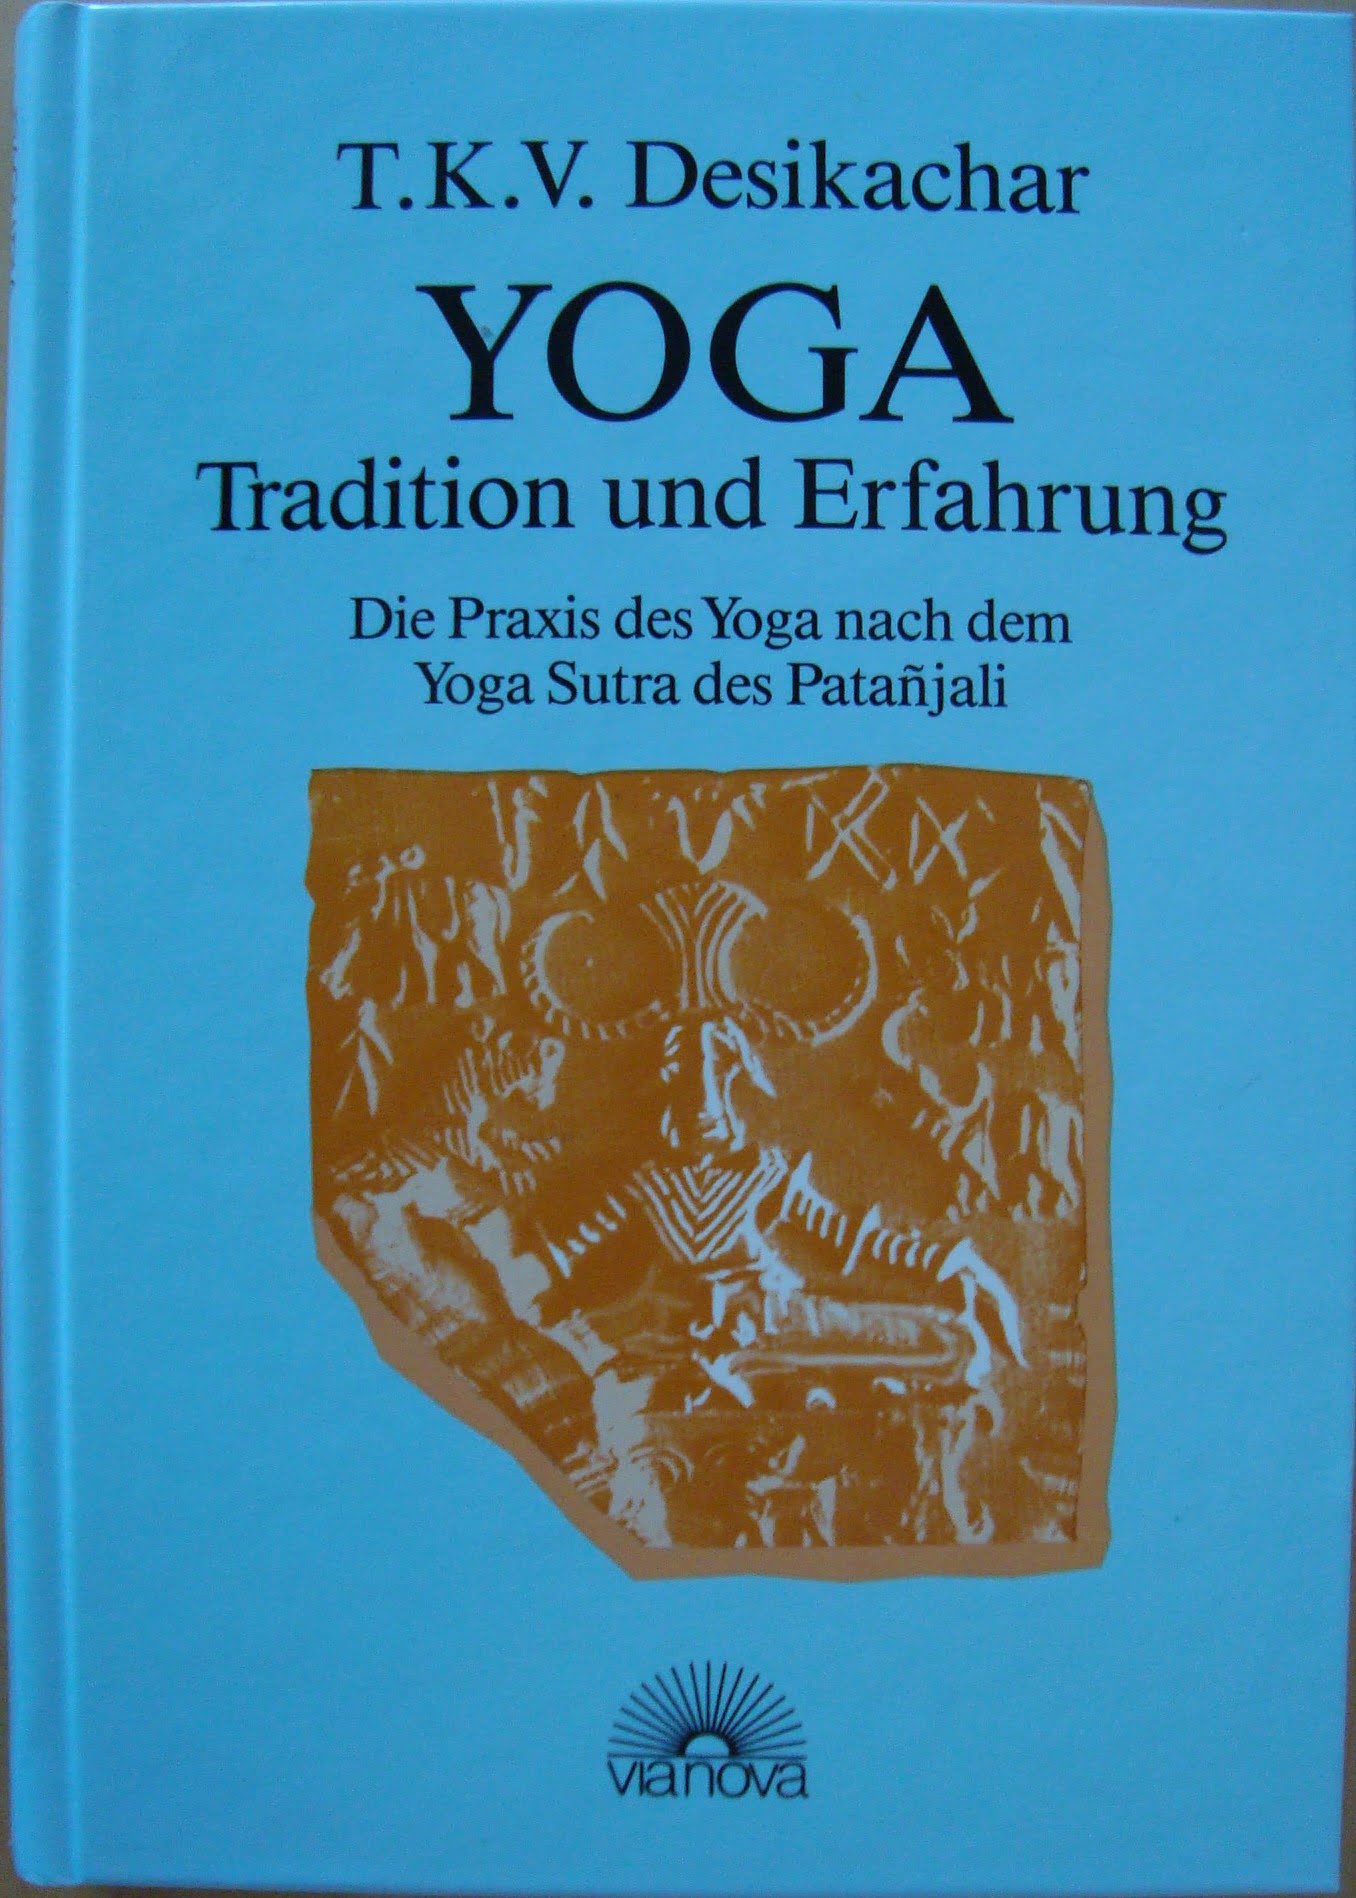 Buchreport über "Yoga Tradition und Erfahrung" von T.K.V. Desikachar